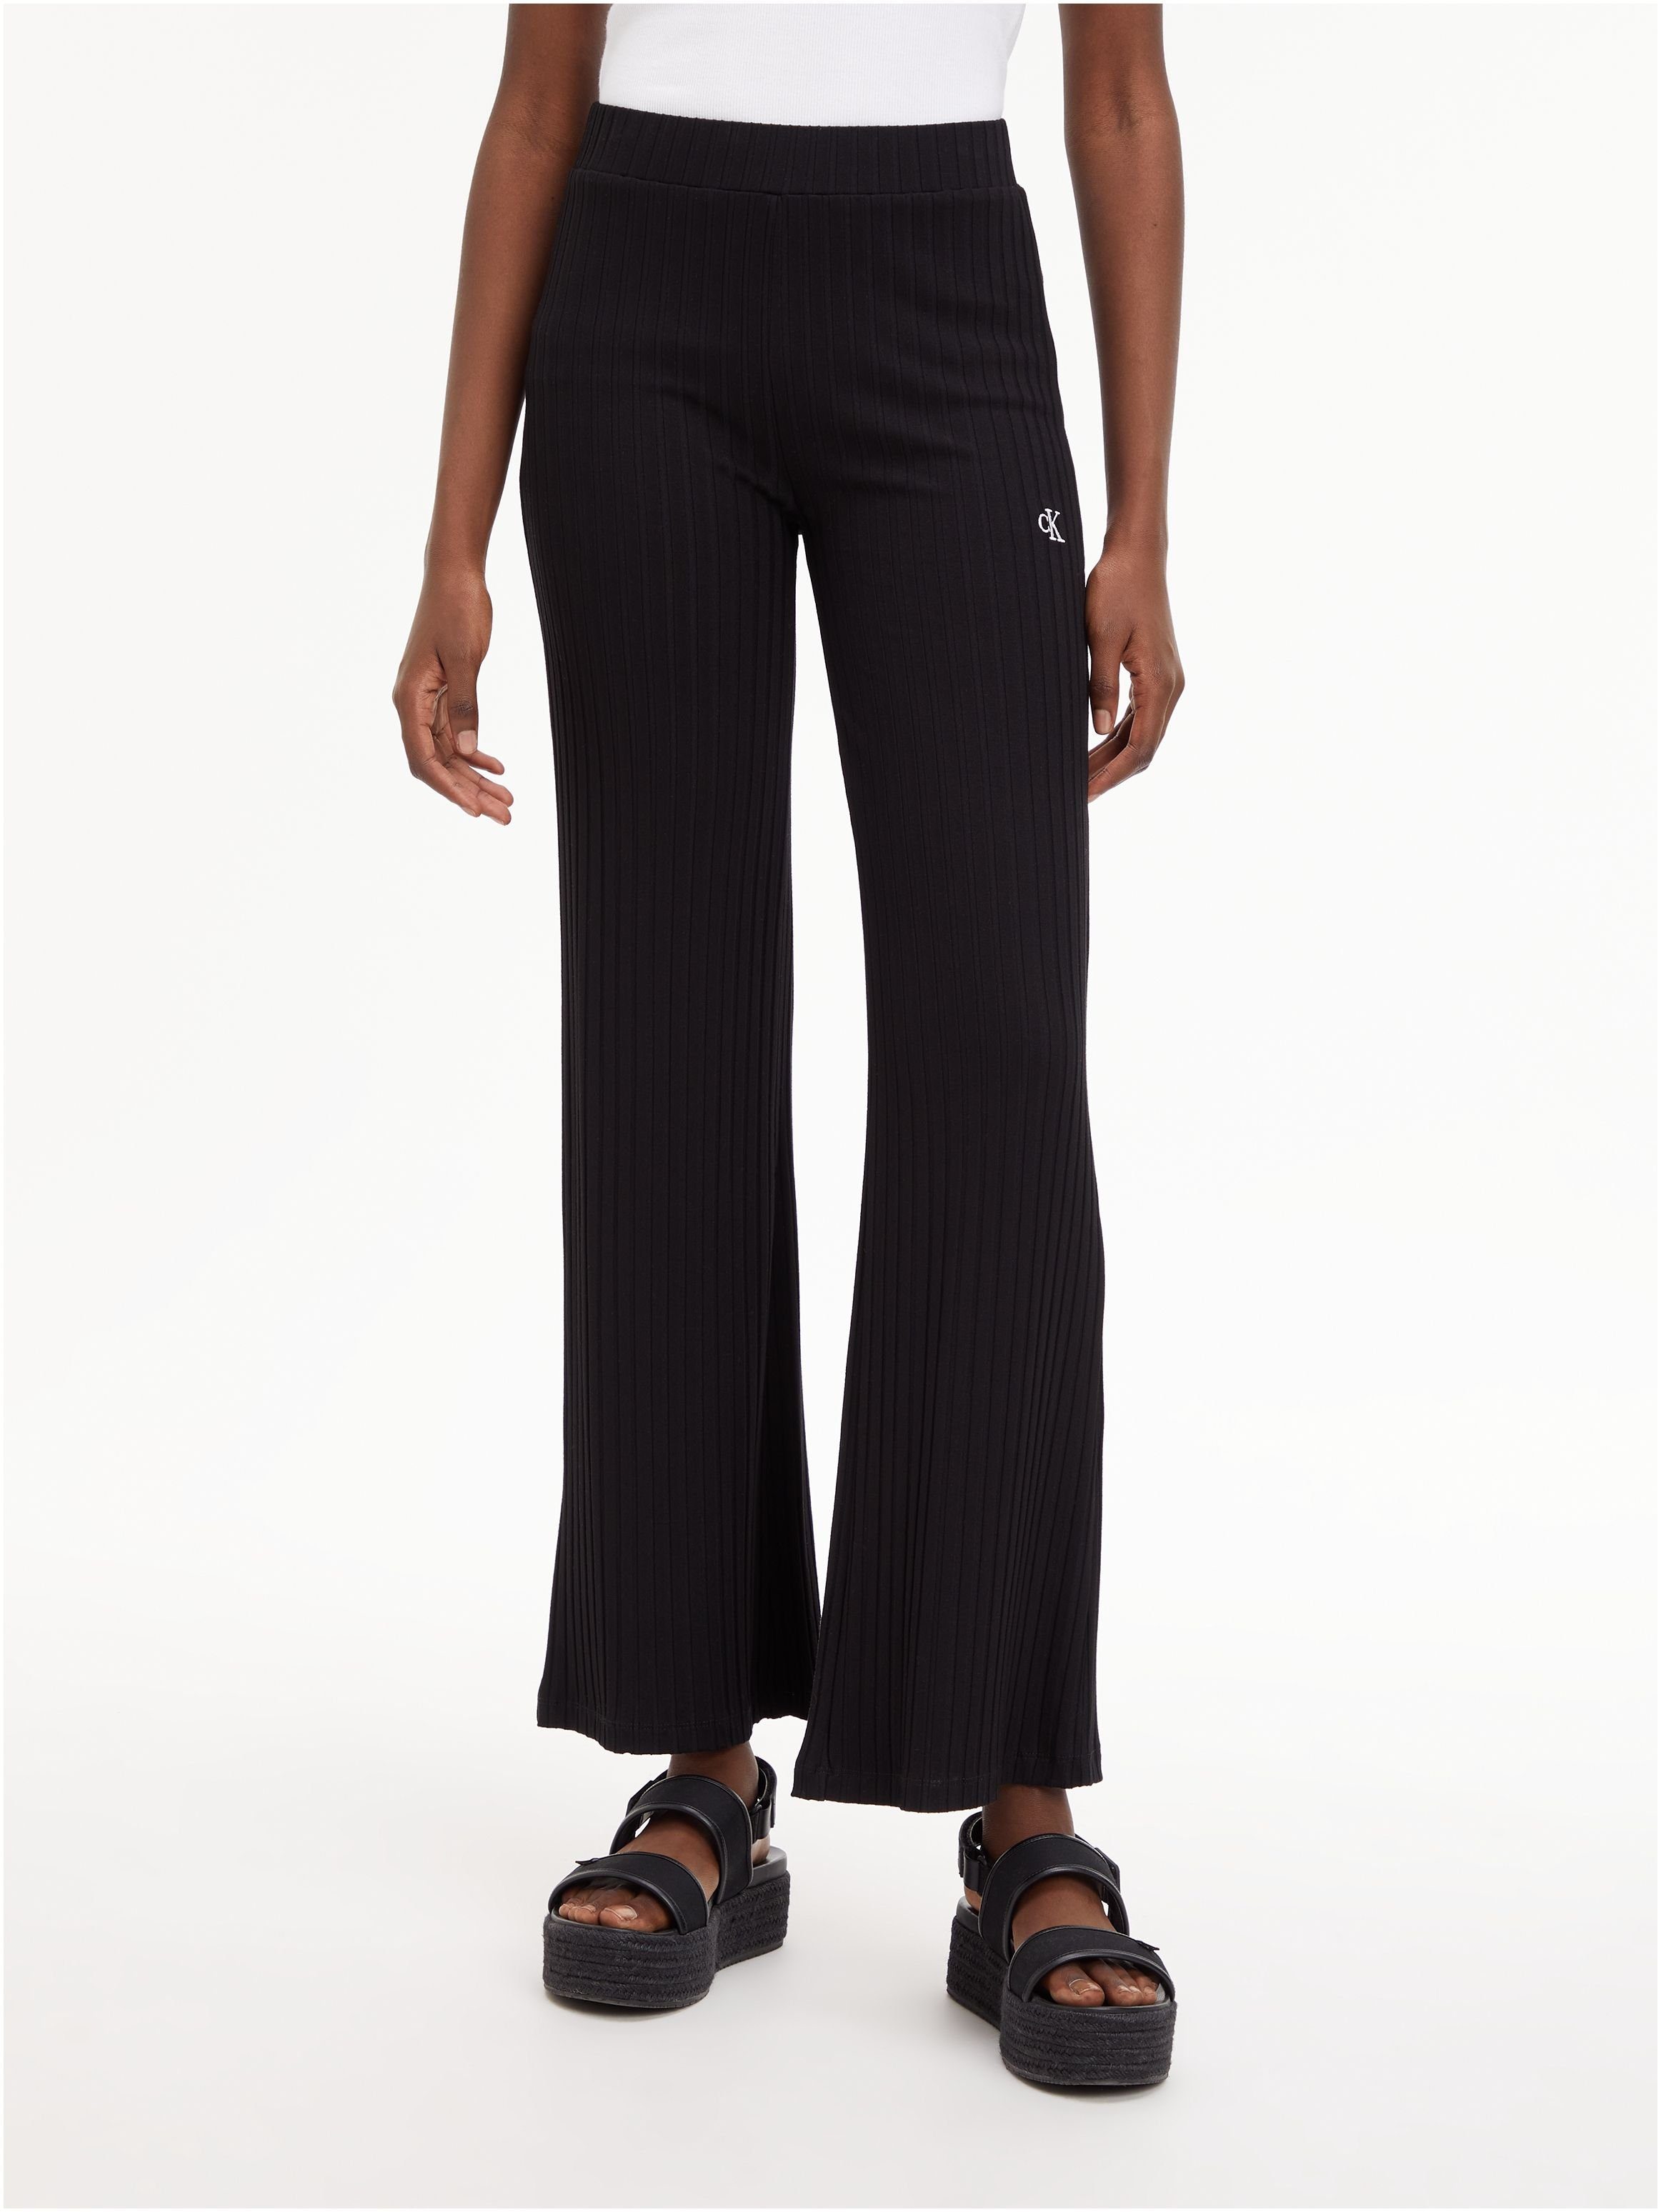 Calvin Klein Jeans schwarz Stretch-Hose